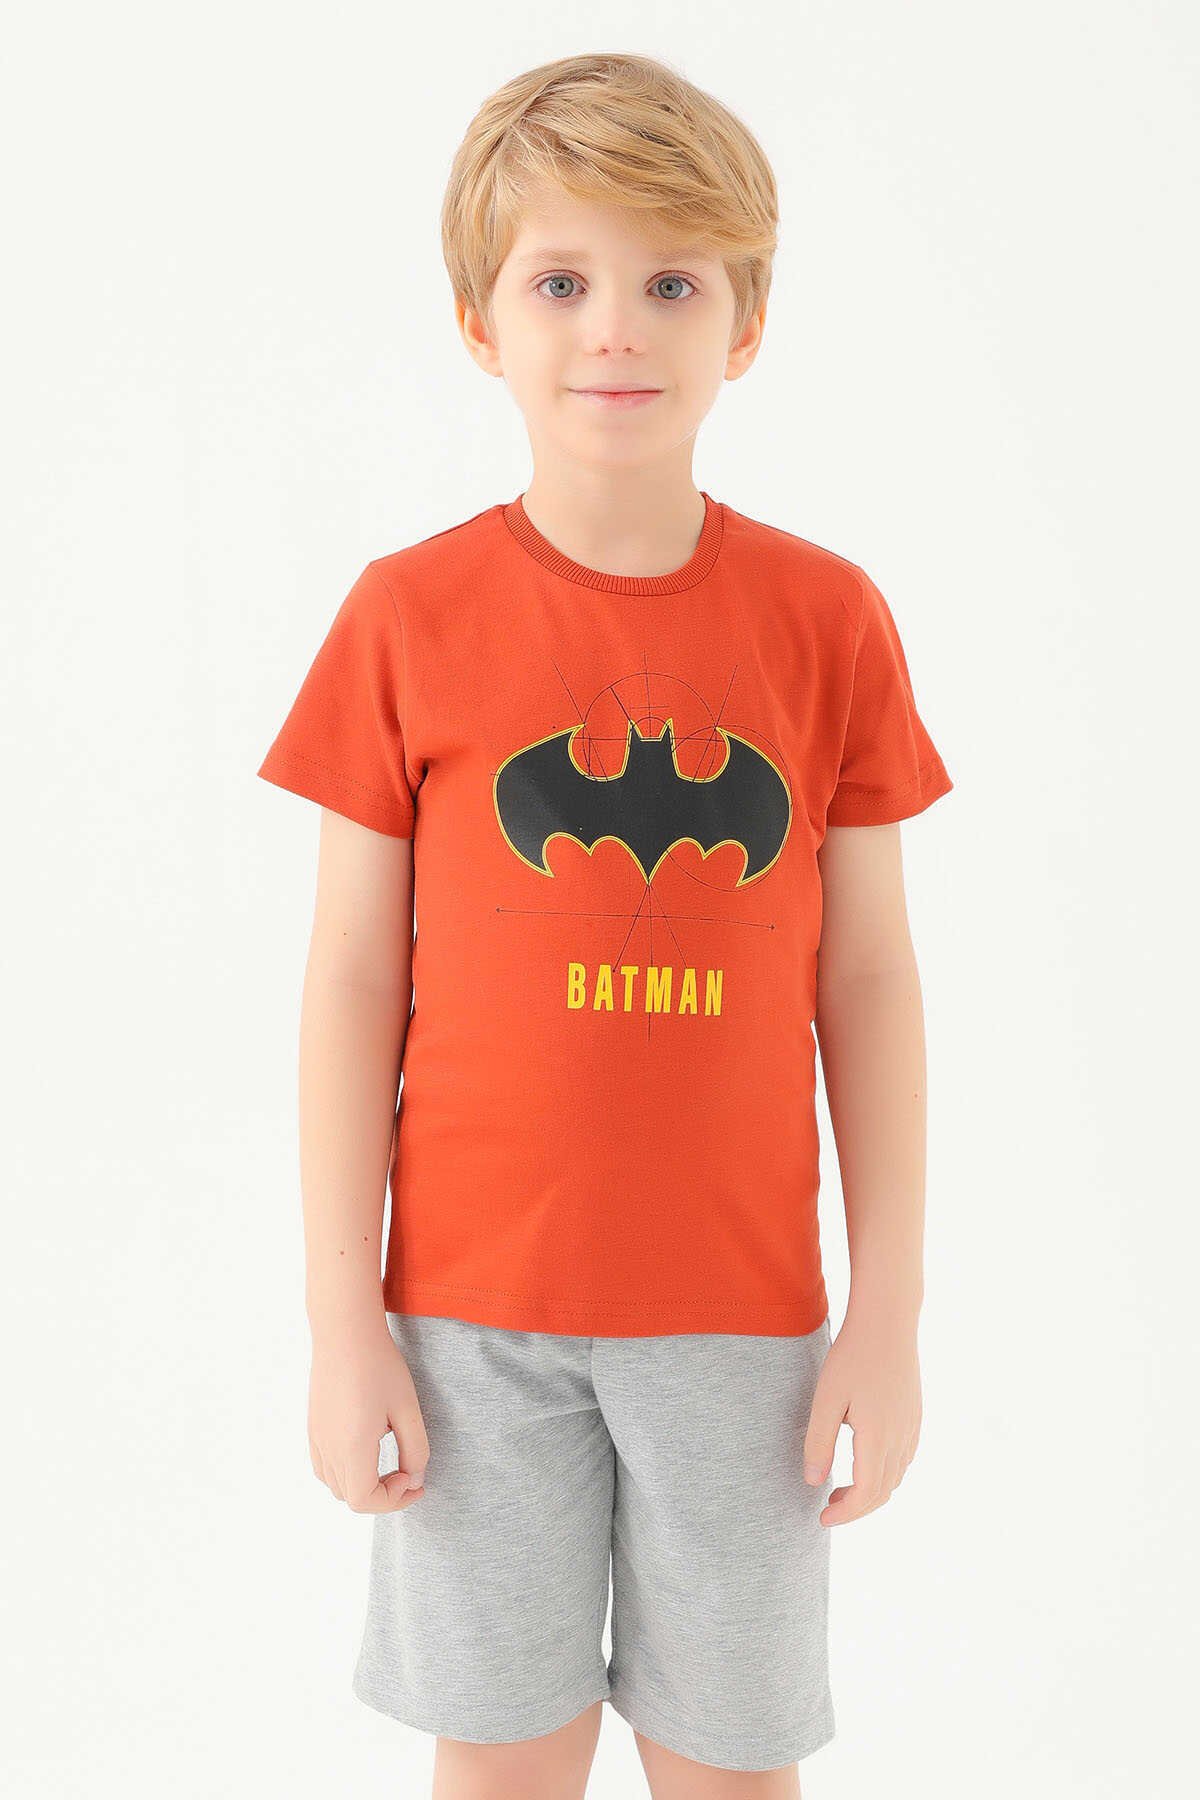 Batman - Batman L1580-2 Erkek Çocuk T-Shirt Tarçın